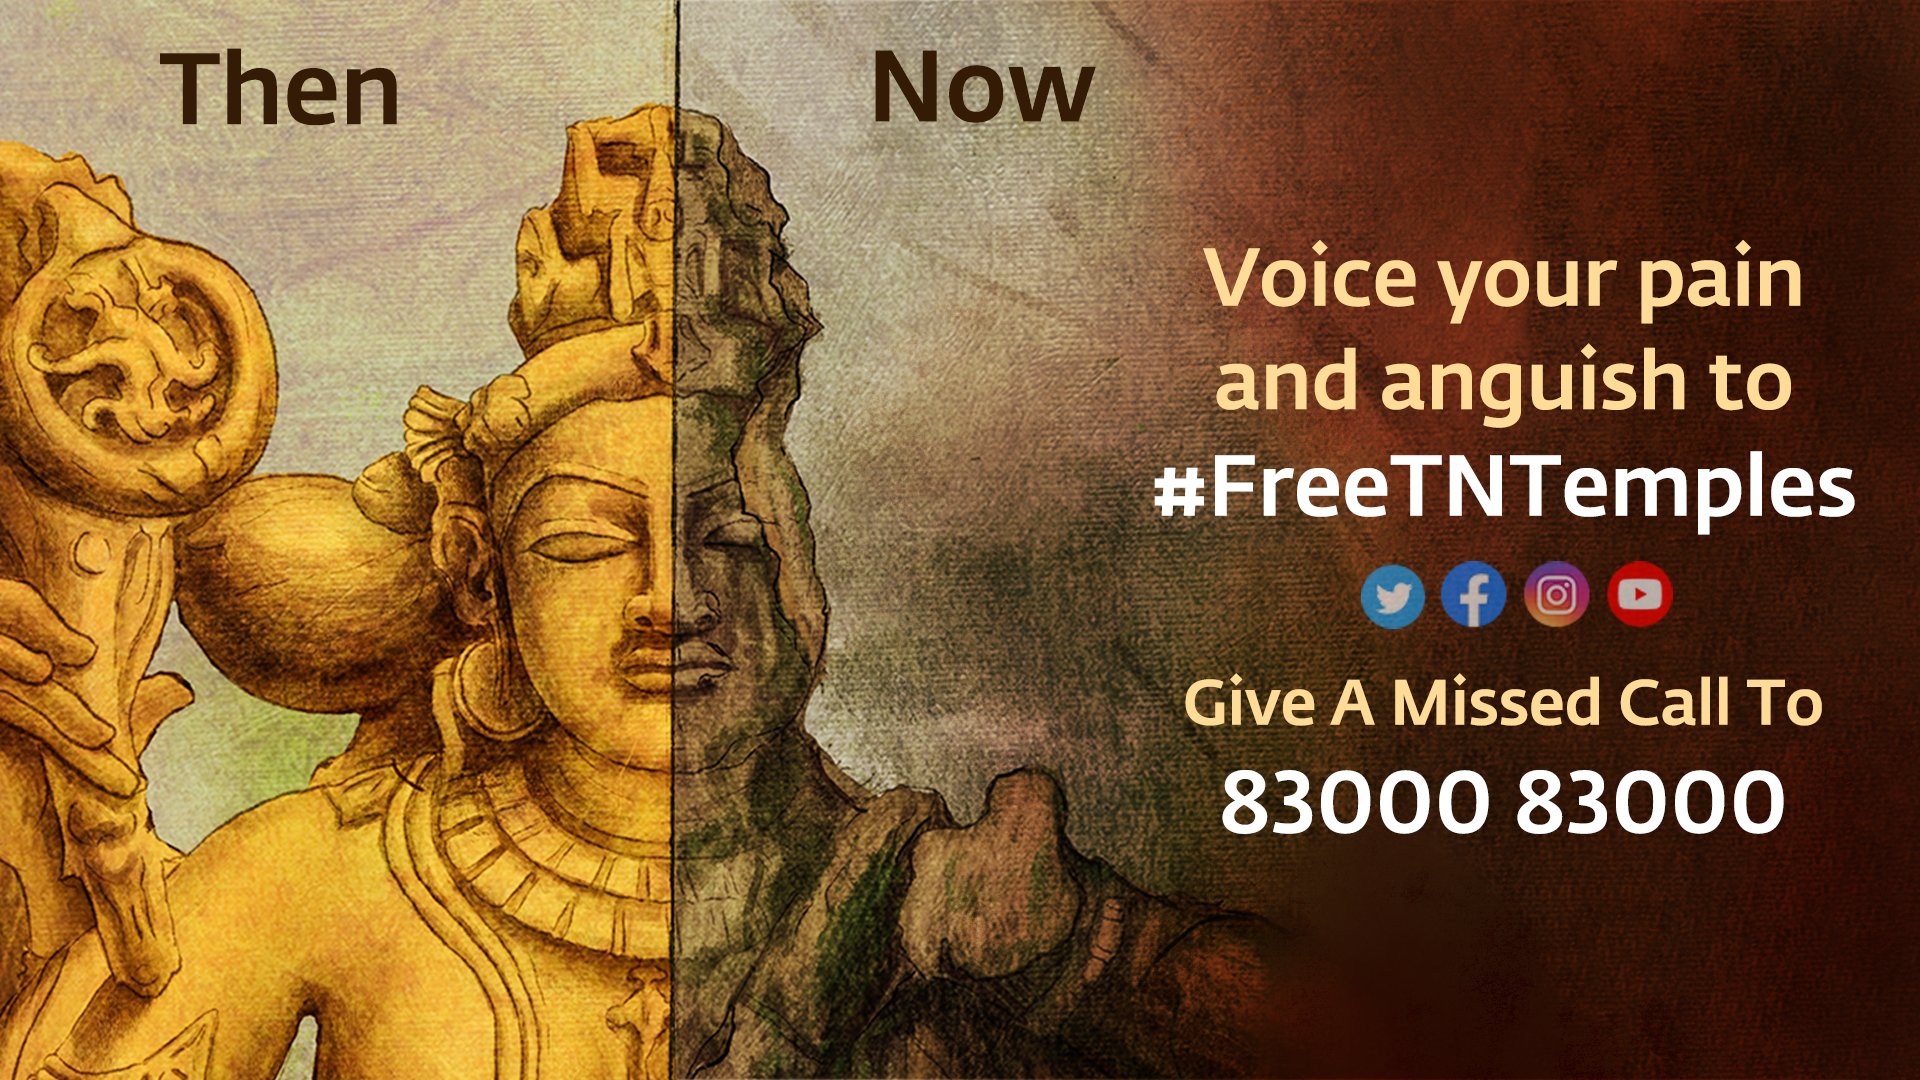 Free Tamil Nadu's Temples - #FreeTNTemples - Isha Sadhguru